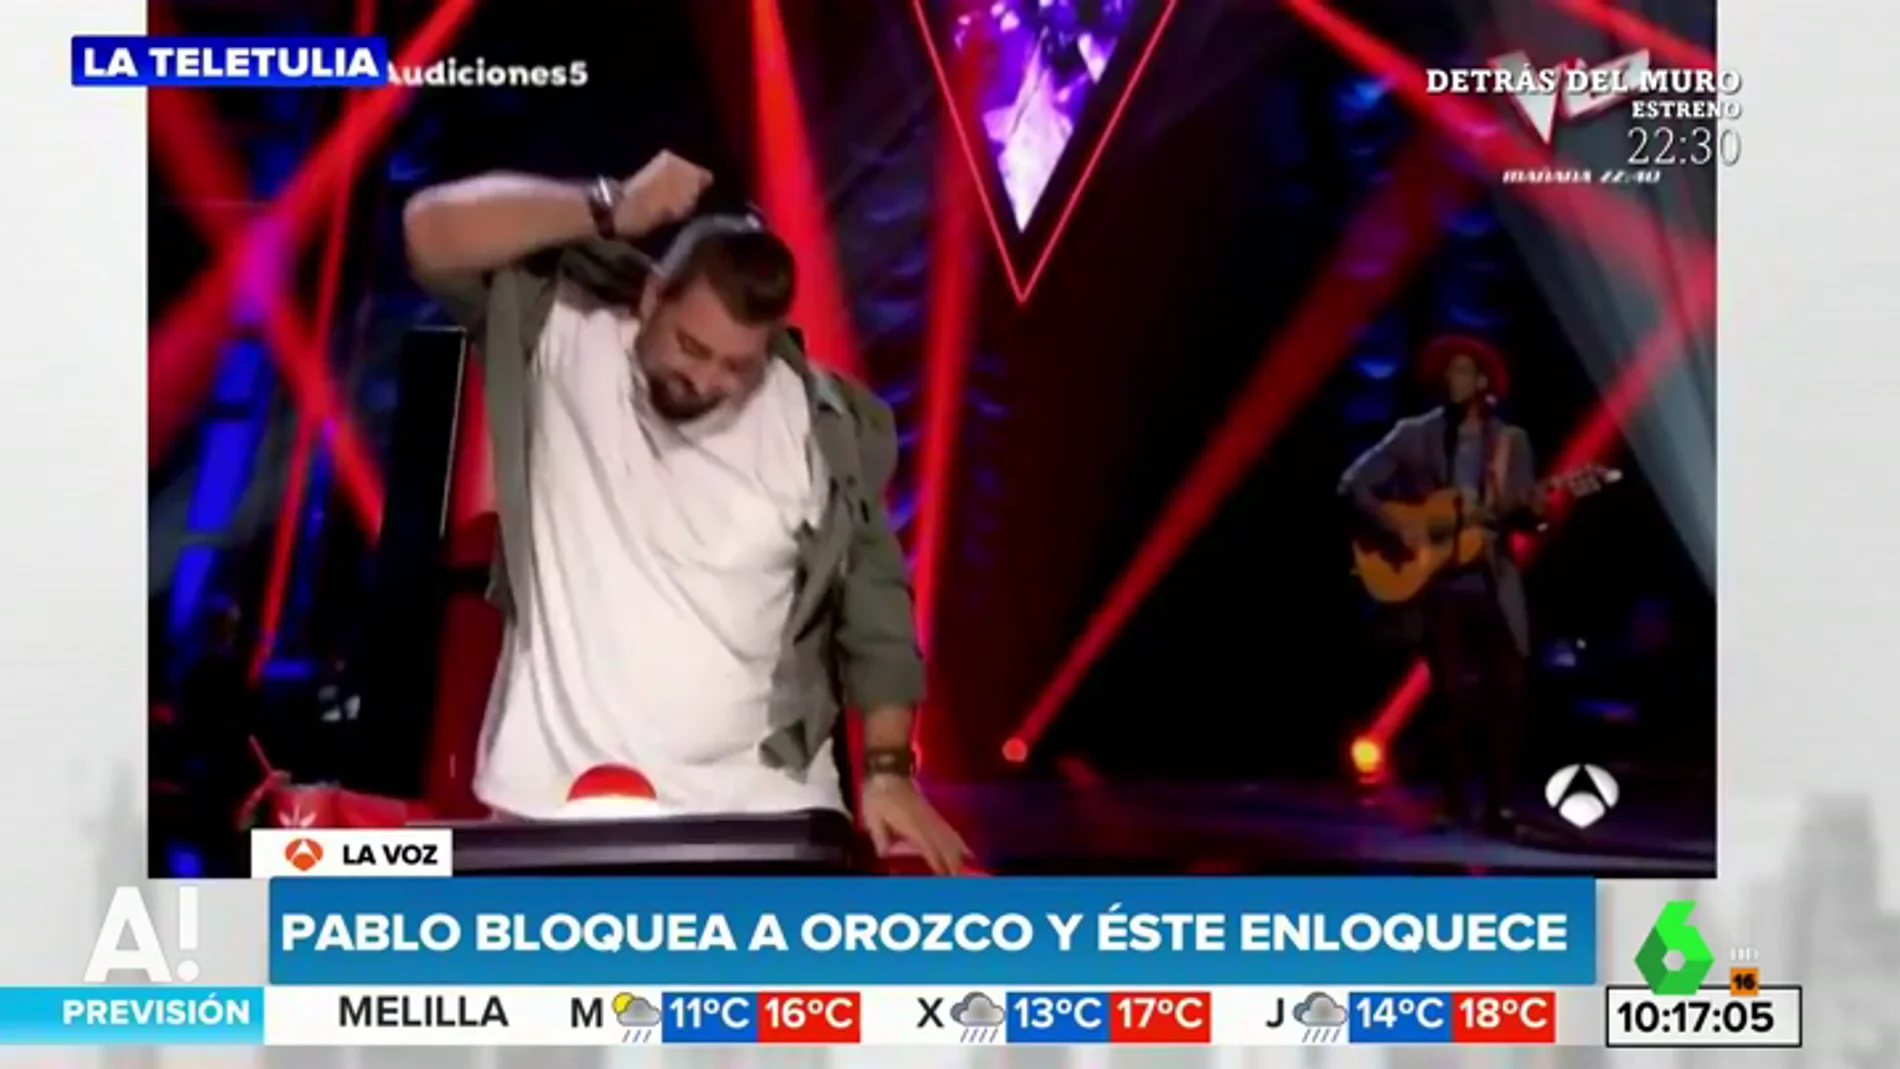 Pablo López bloquea a Orozco durante una actuación de 'La Voz' y este enloquece: "Sabrás que es injusto"